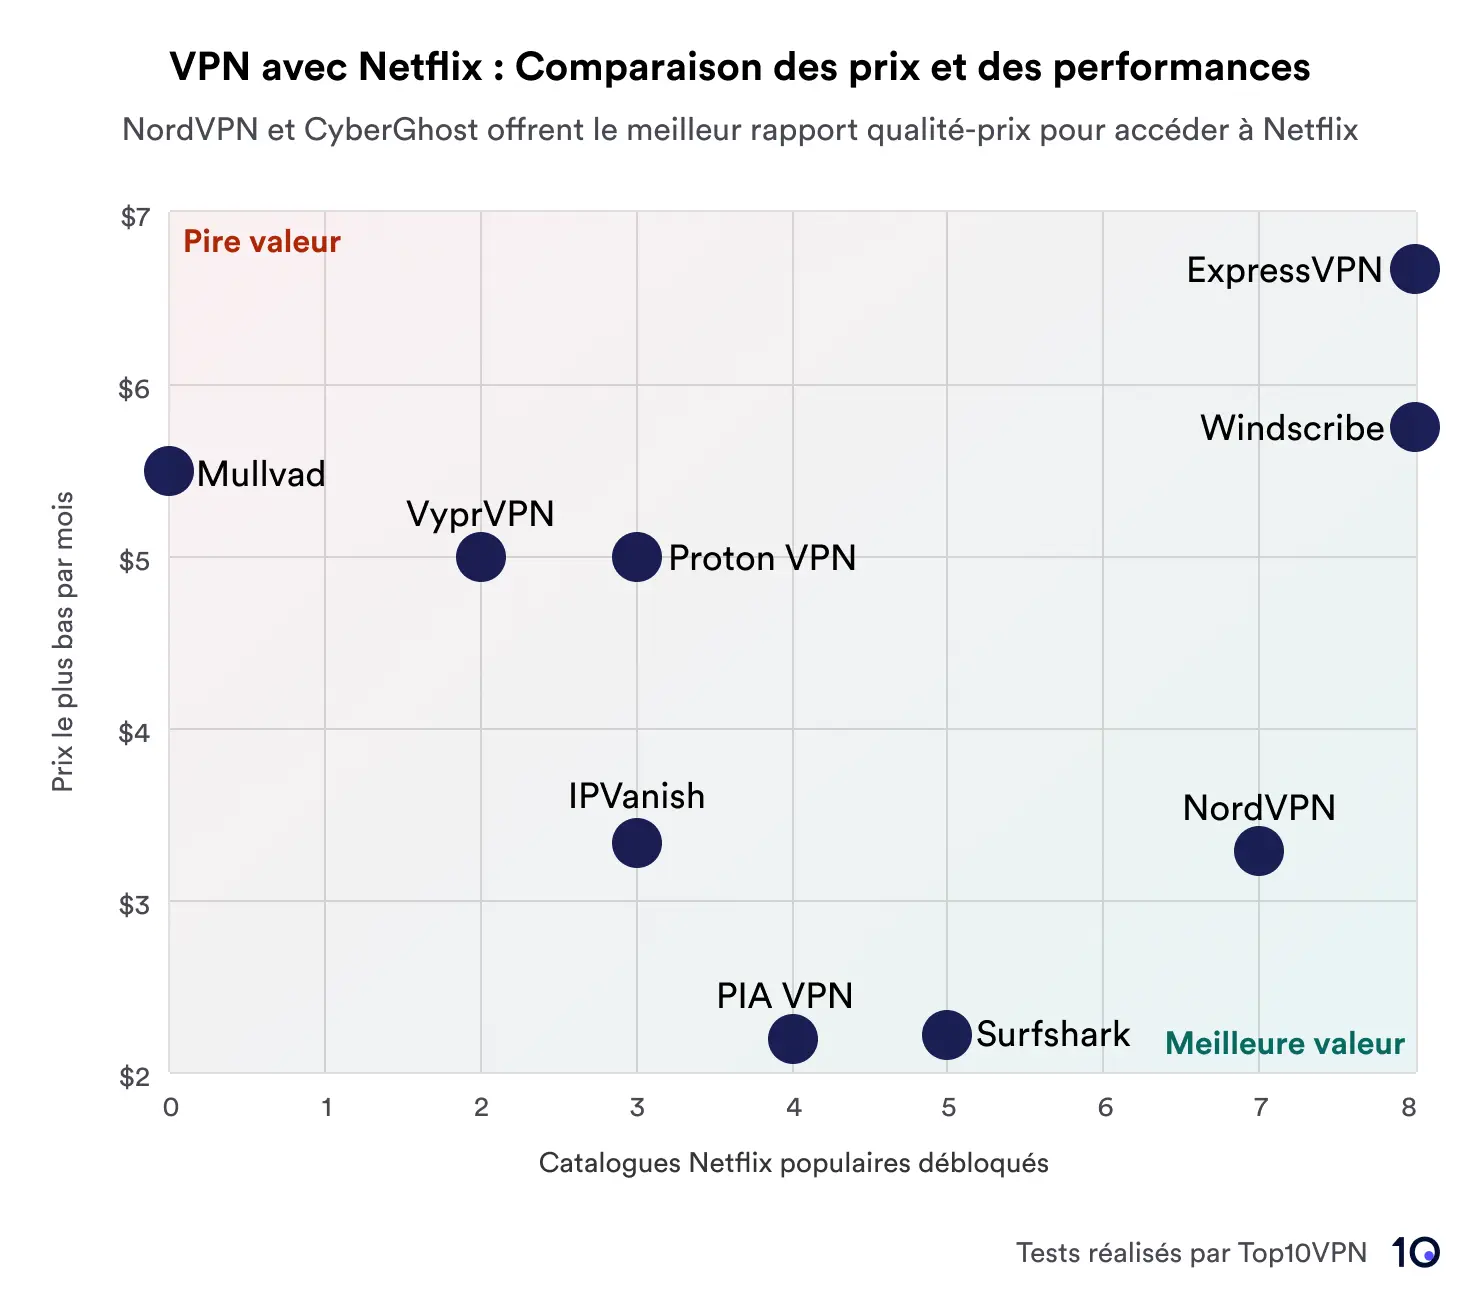 Nuage de points montrant une comparaison des services VPN basée sur le prix et les performances lors du déblocage des bibliothèques Netflix. NordVPN et CyberGhost se distinguent par le meilleur rapport qualité-prix, représenté dans la zone marquée comme 